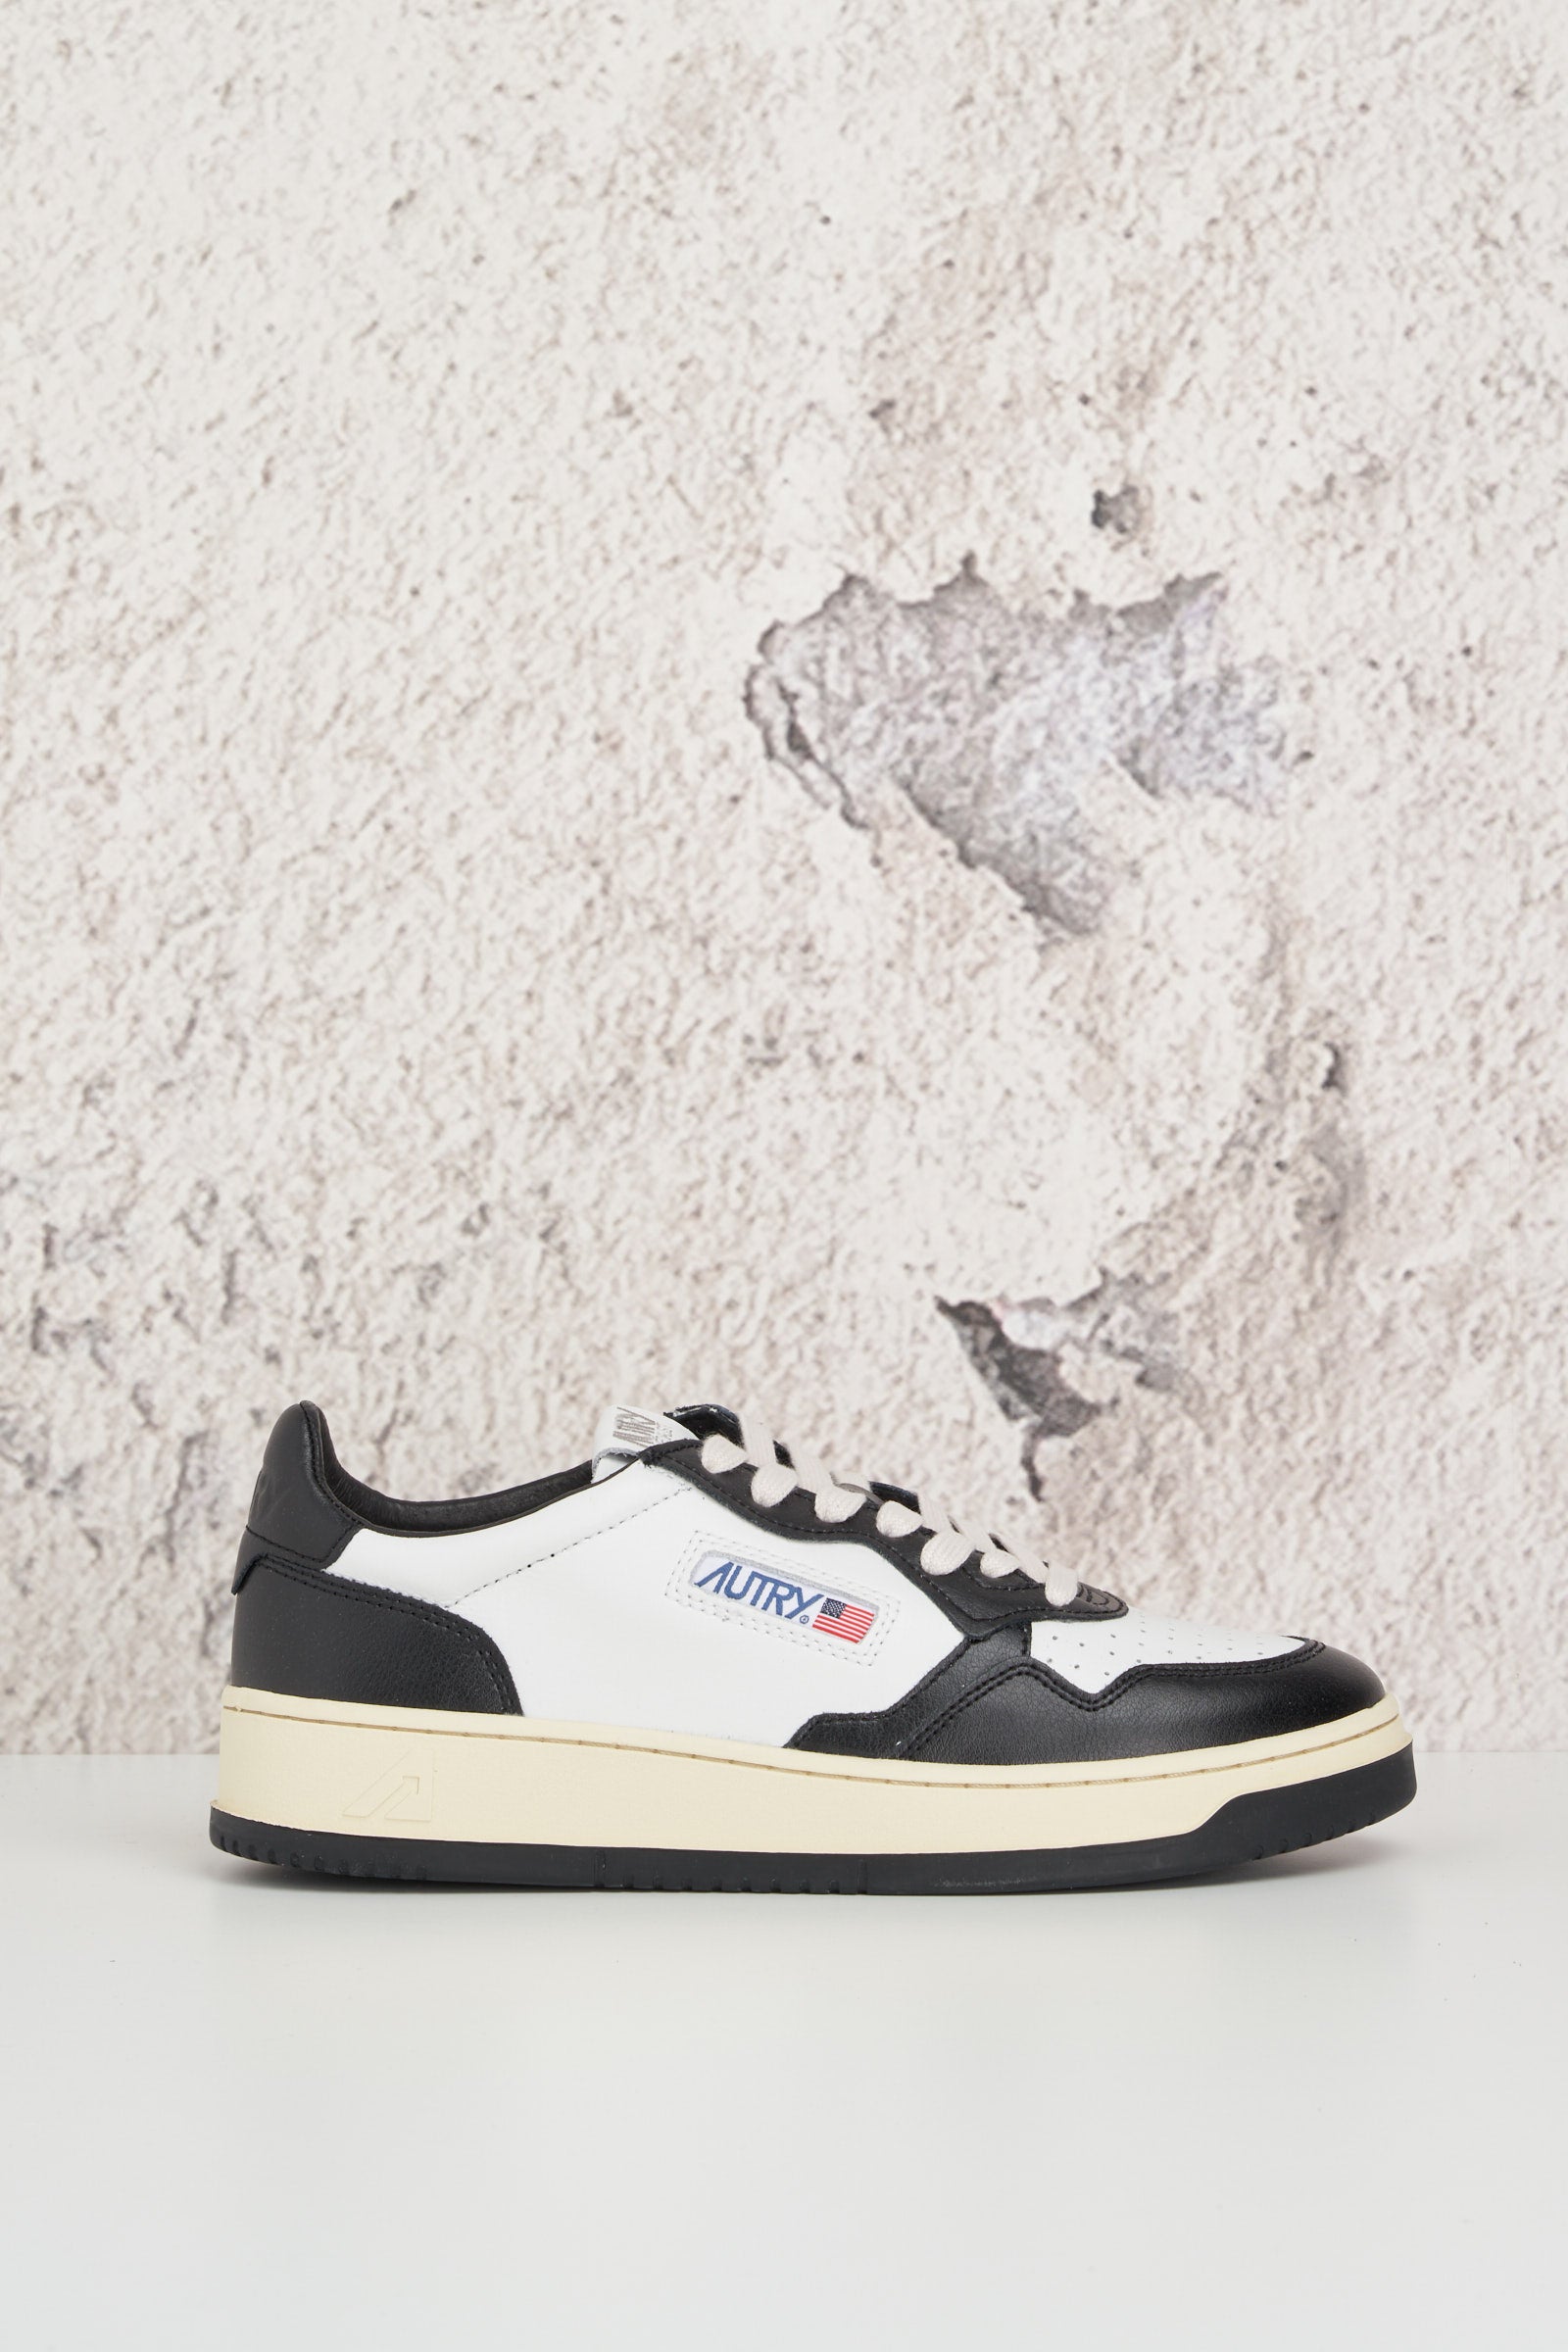  Autry Sneaker Nero E Bianco Uomo - 2